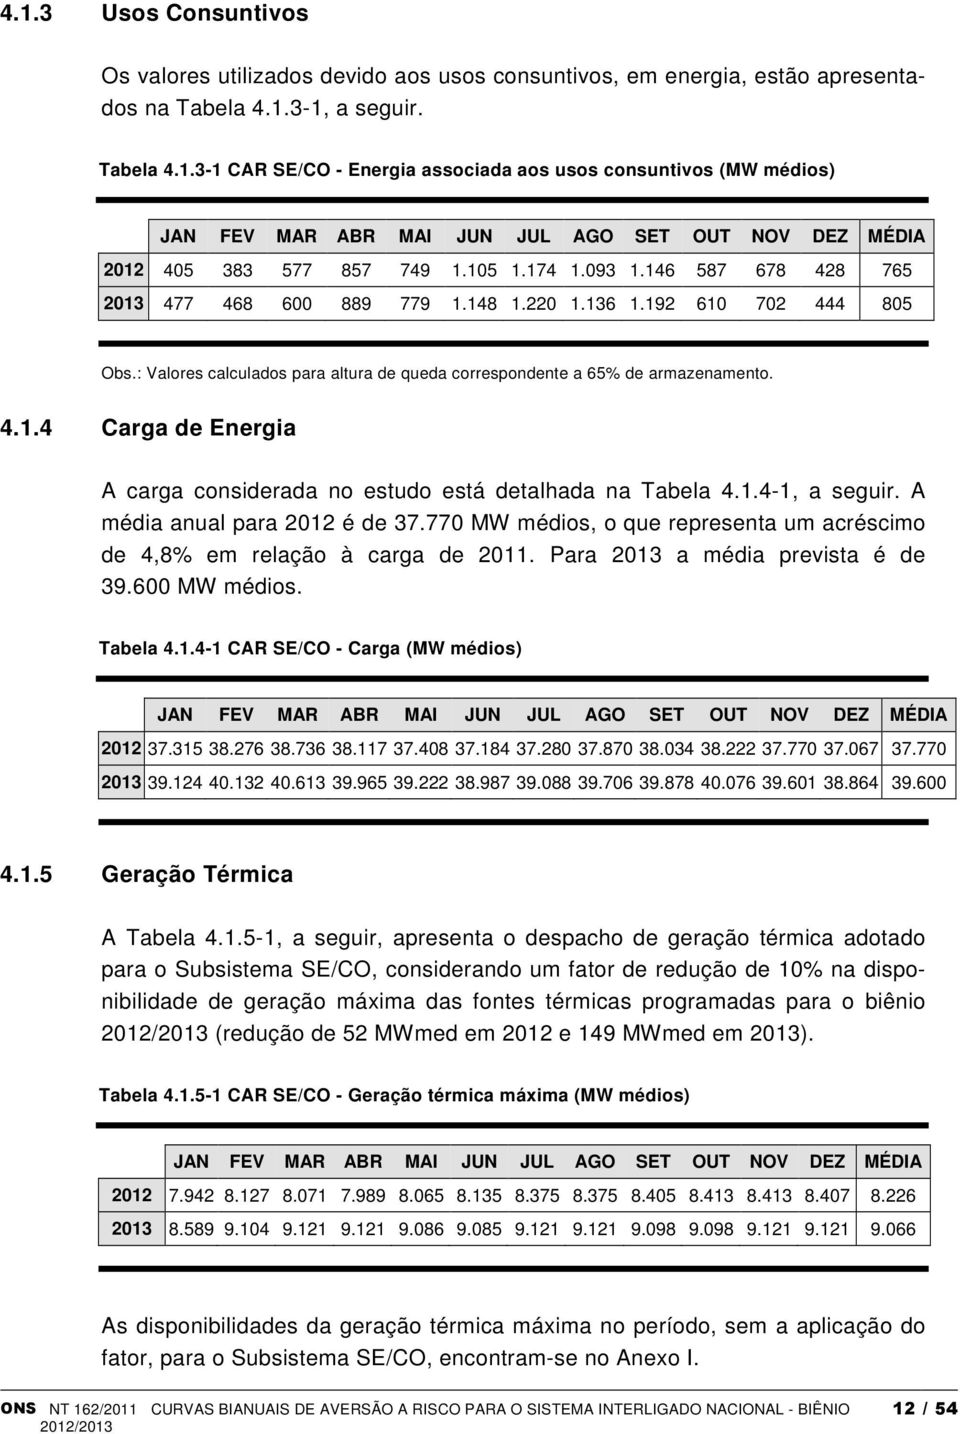 1.4-1, a seguir. A média anual para 2012 é de 37.770 MW médios, o que representa um acréscimo de 4,8% em relação à carga de 2011. Para 2013 a média prevista é de 39.600 MW médios. Tabela 4.1.4-1 CAR SE/CO - Carga (MW médios) JAN FEV MAR ABR MAI JUN JUL AGO SET OUT NOV DEZ MÉDIA 2012 37.